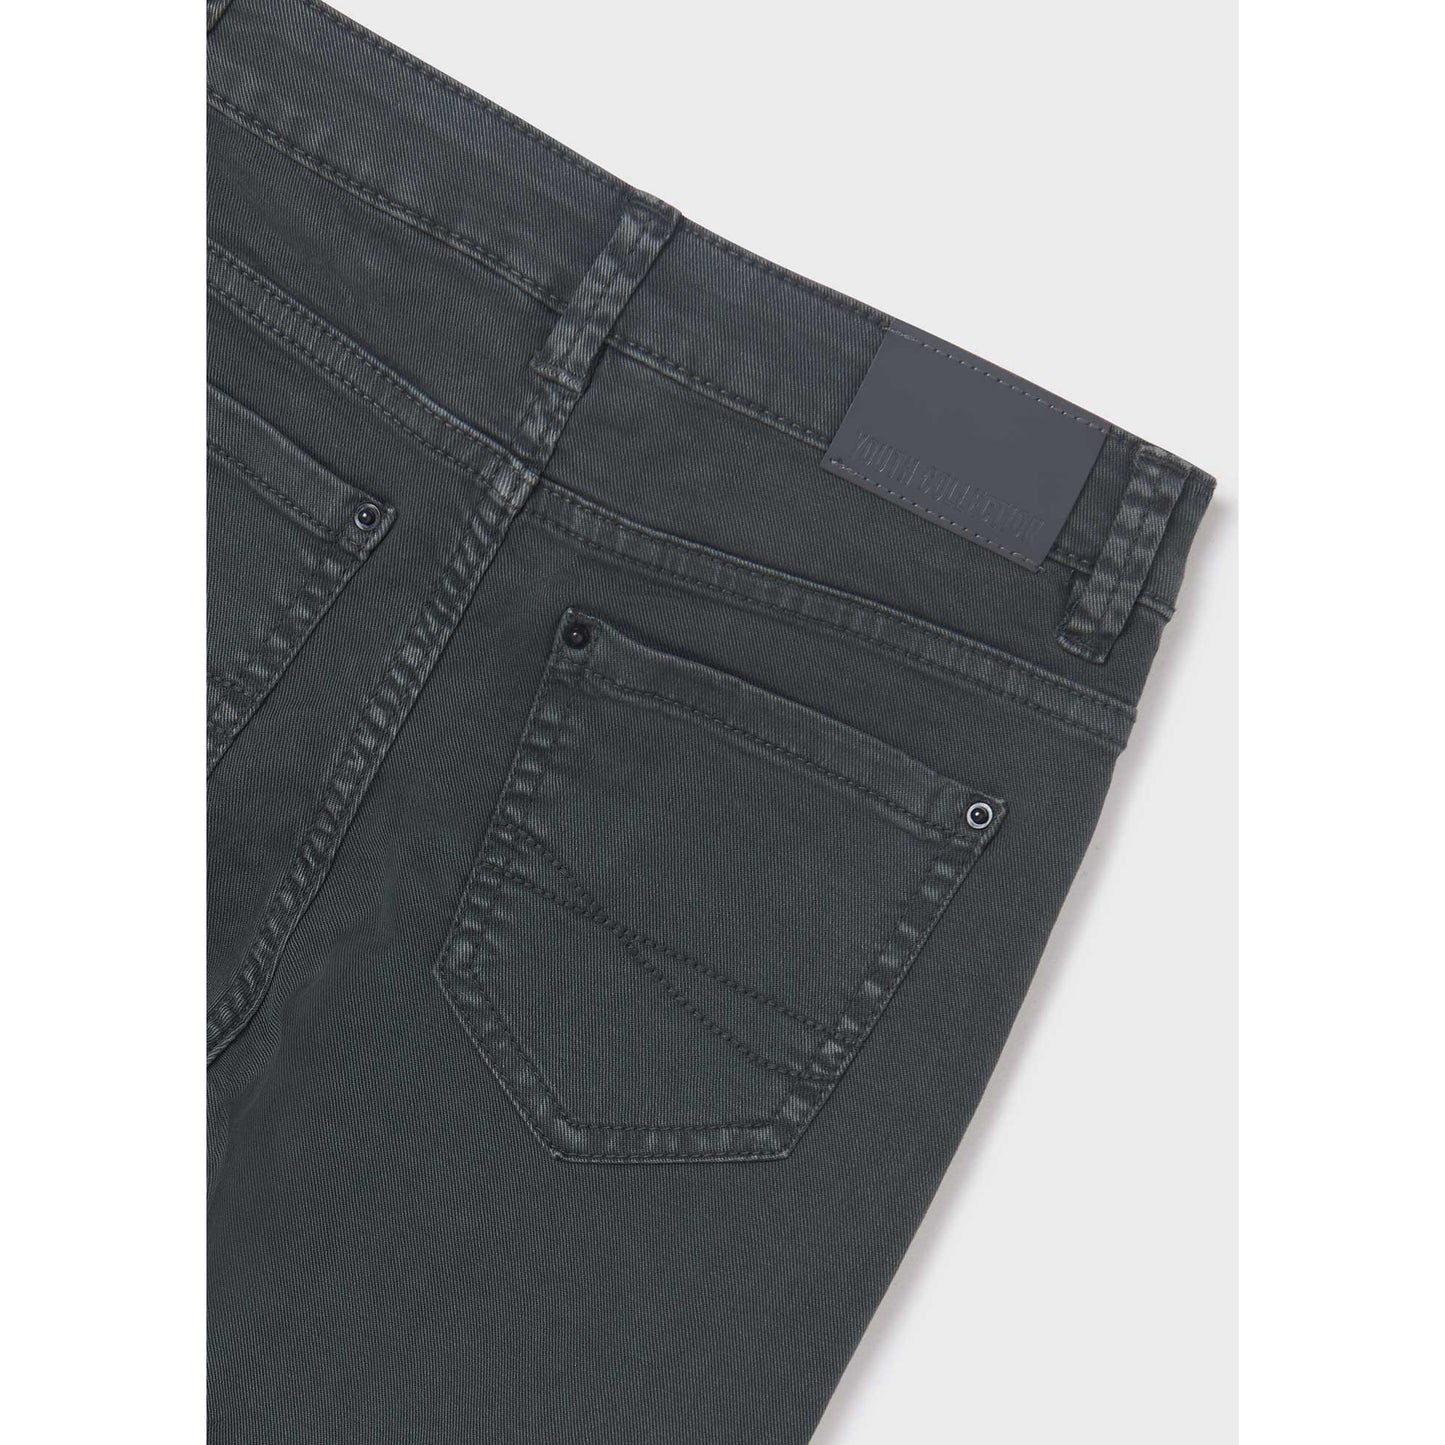 Nukutavake Denim Twill Jeans _ Dark Grey 6560-11